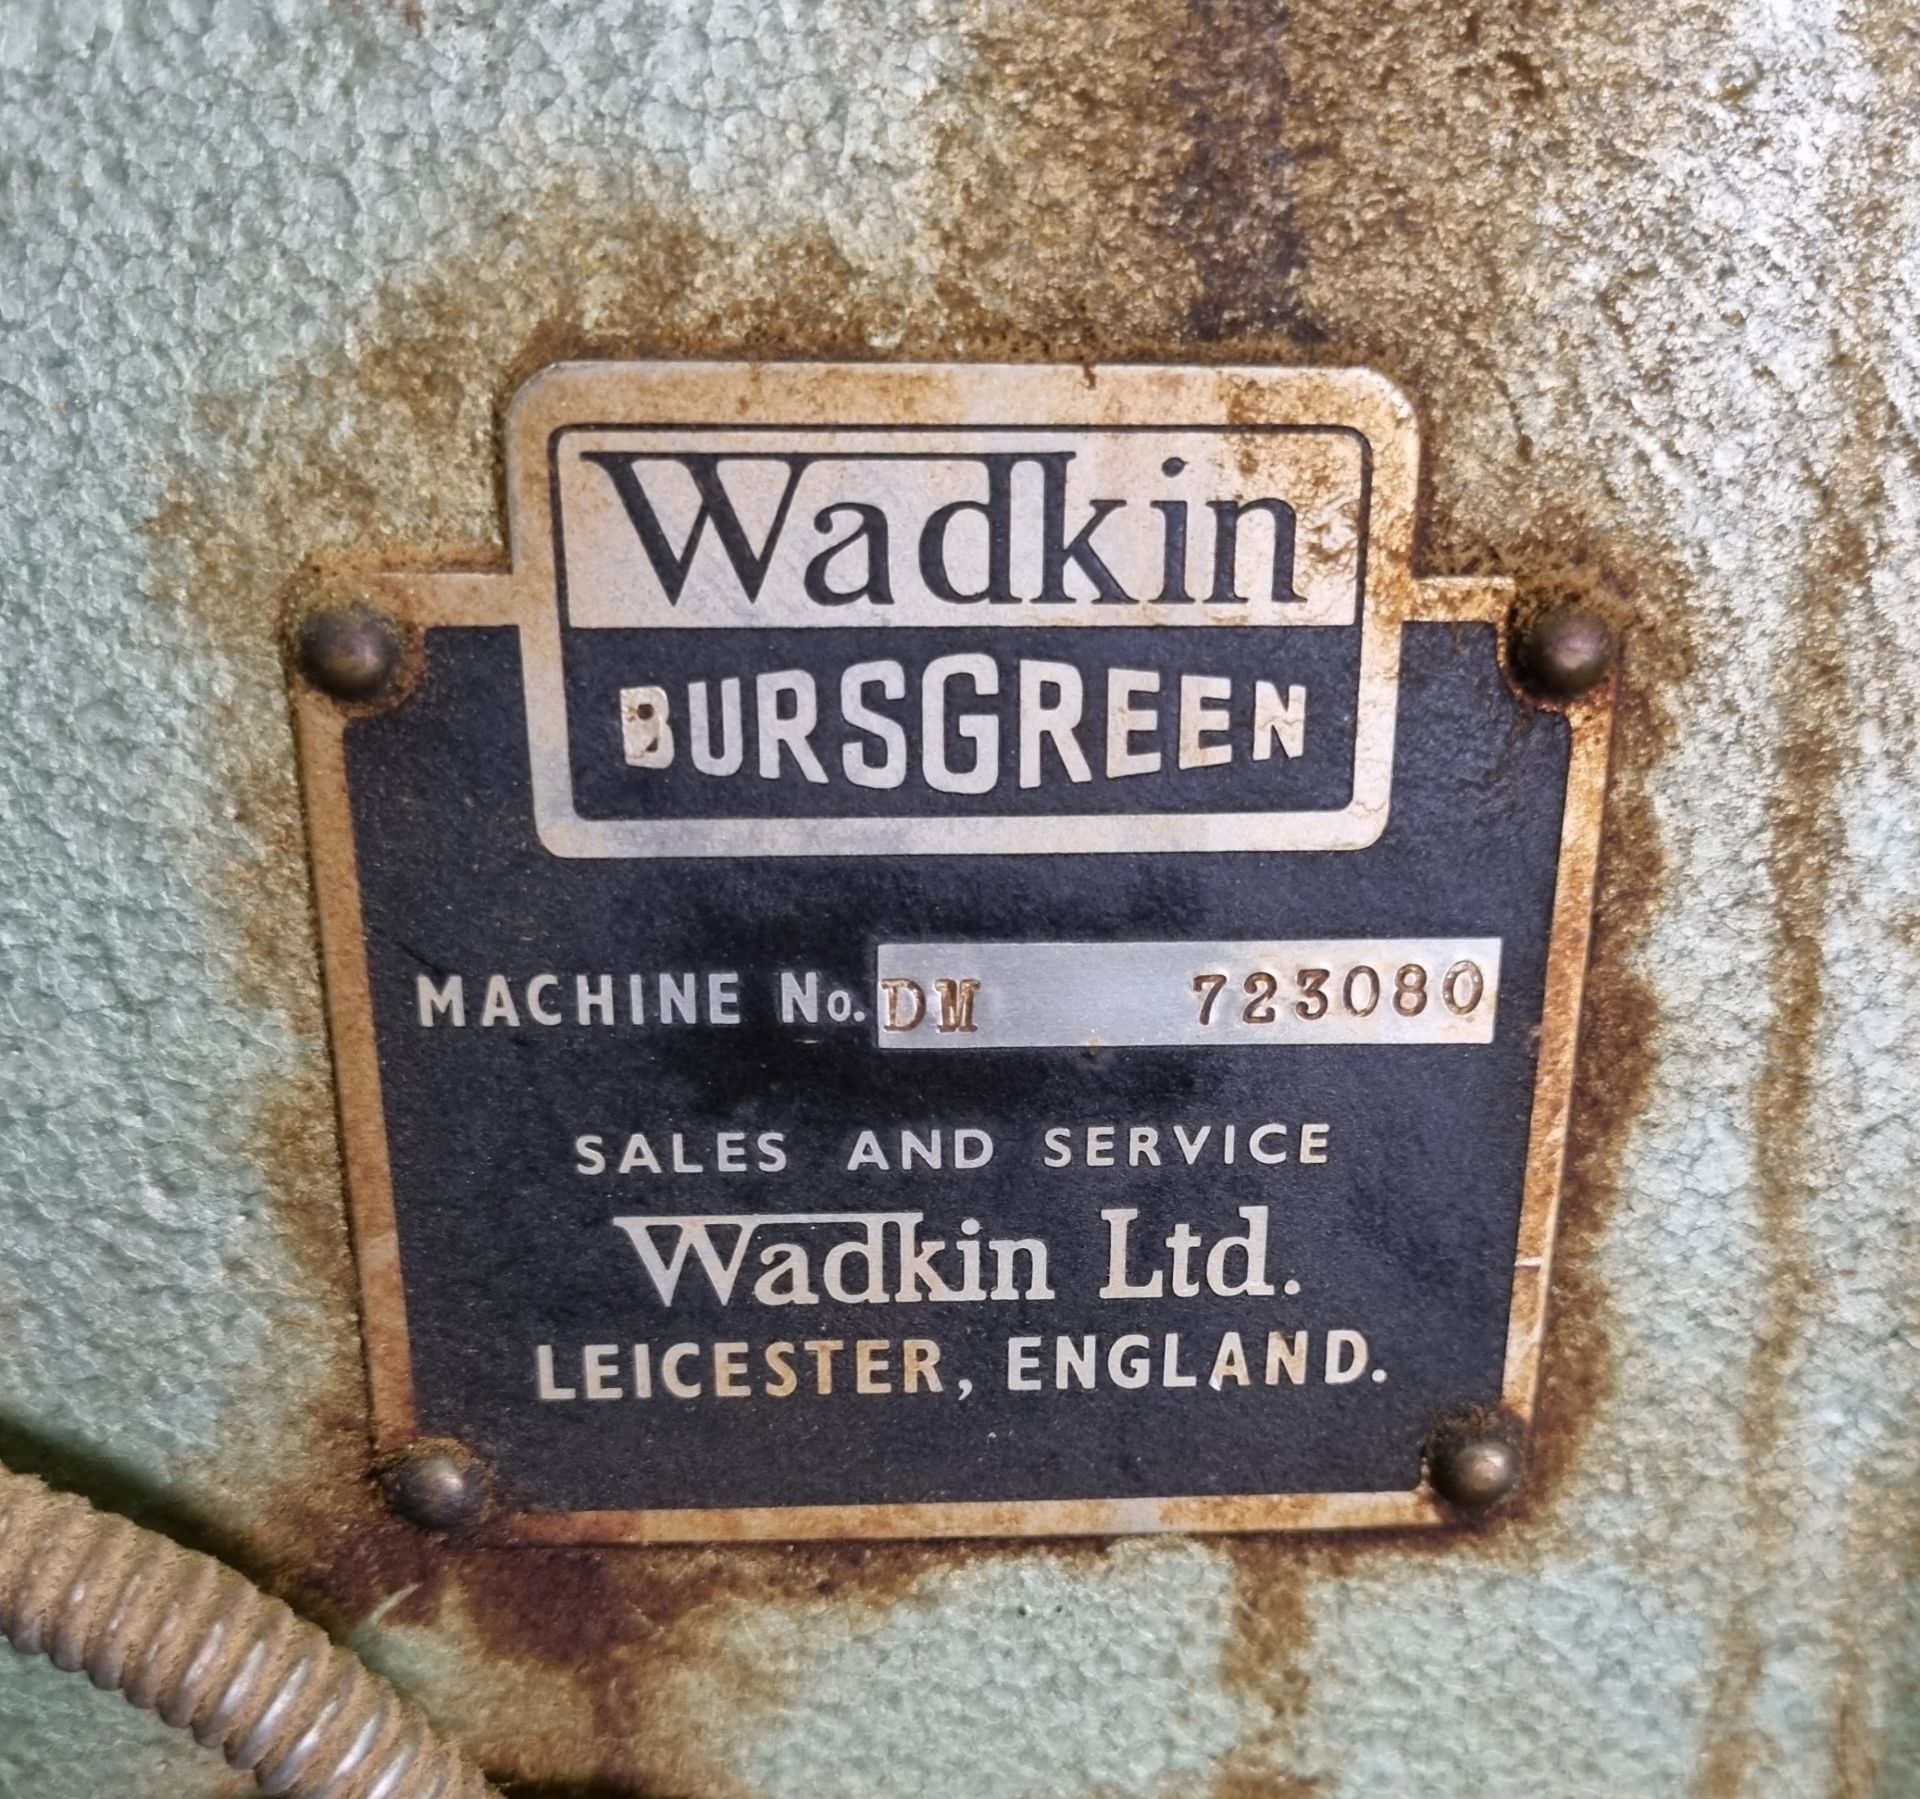 Wadkin Bursgreen pillar drill with square cut drill bit - Machine No: DM 723080 - 415V - L 1000 - Image 8 of 9